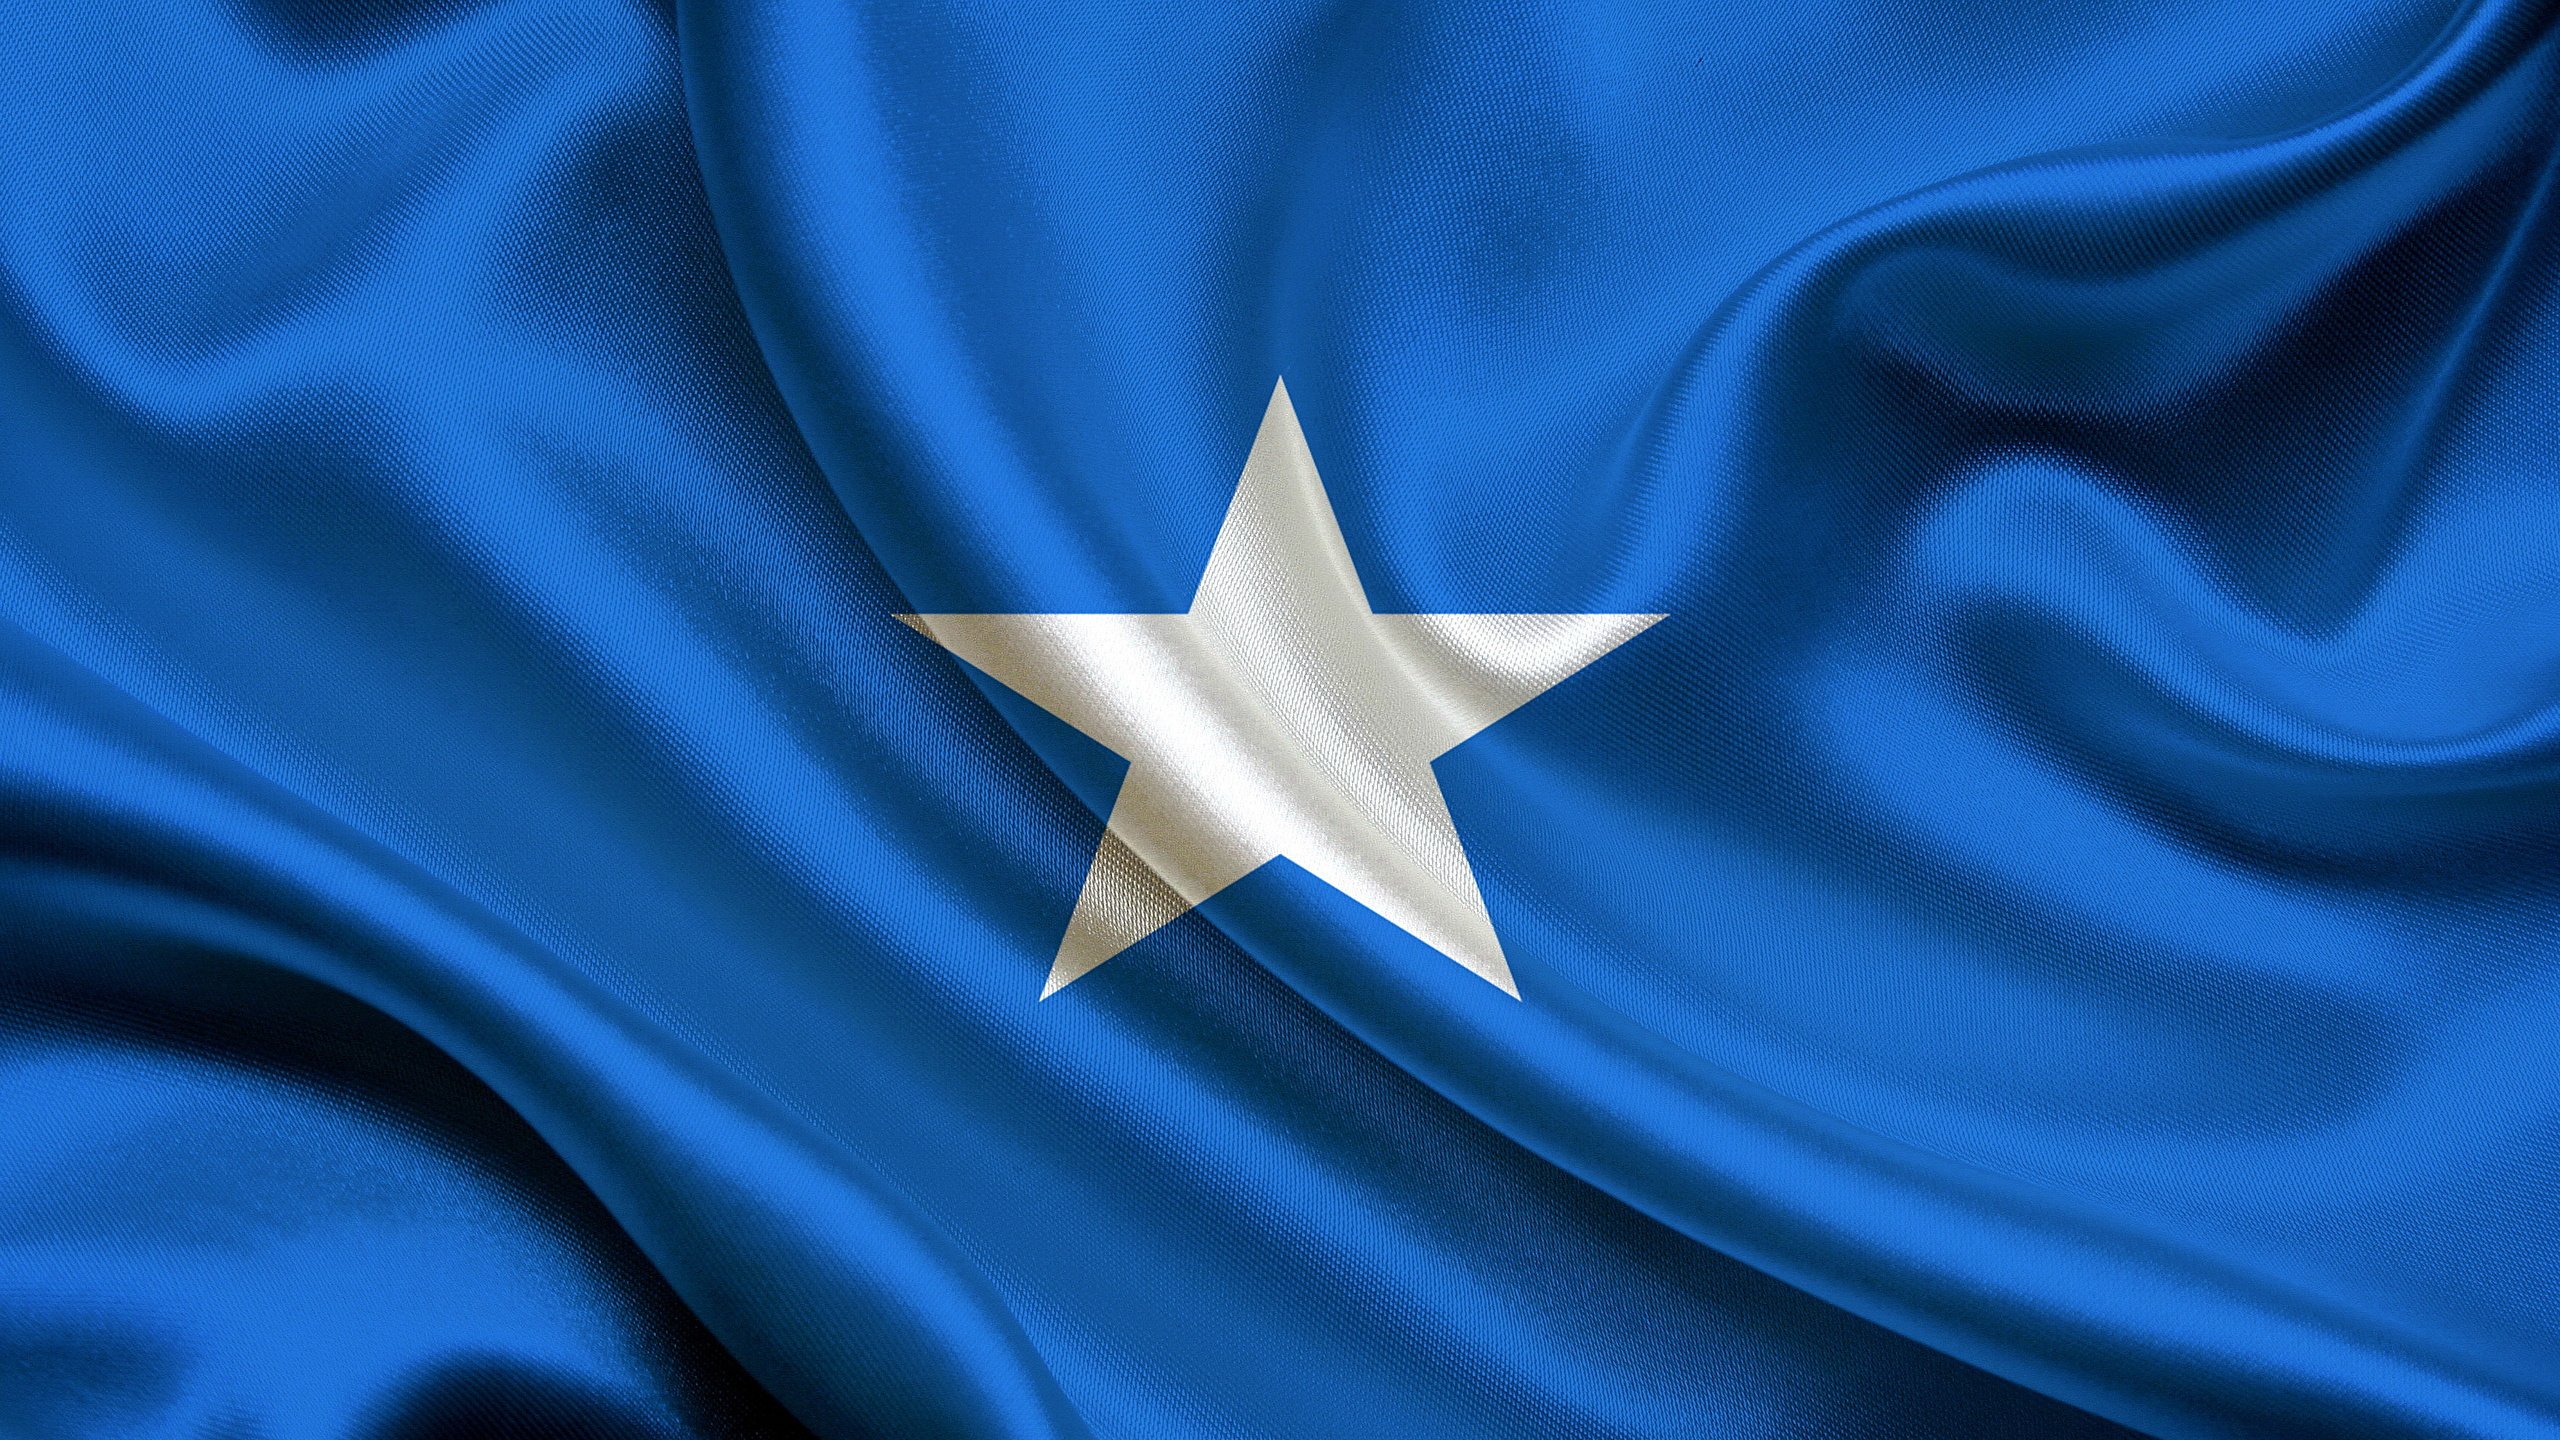 Wallpaper Somalia Flag 2560x1440